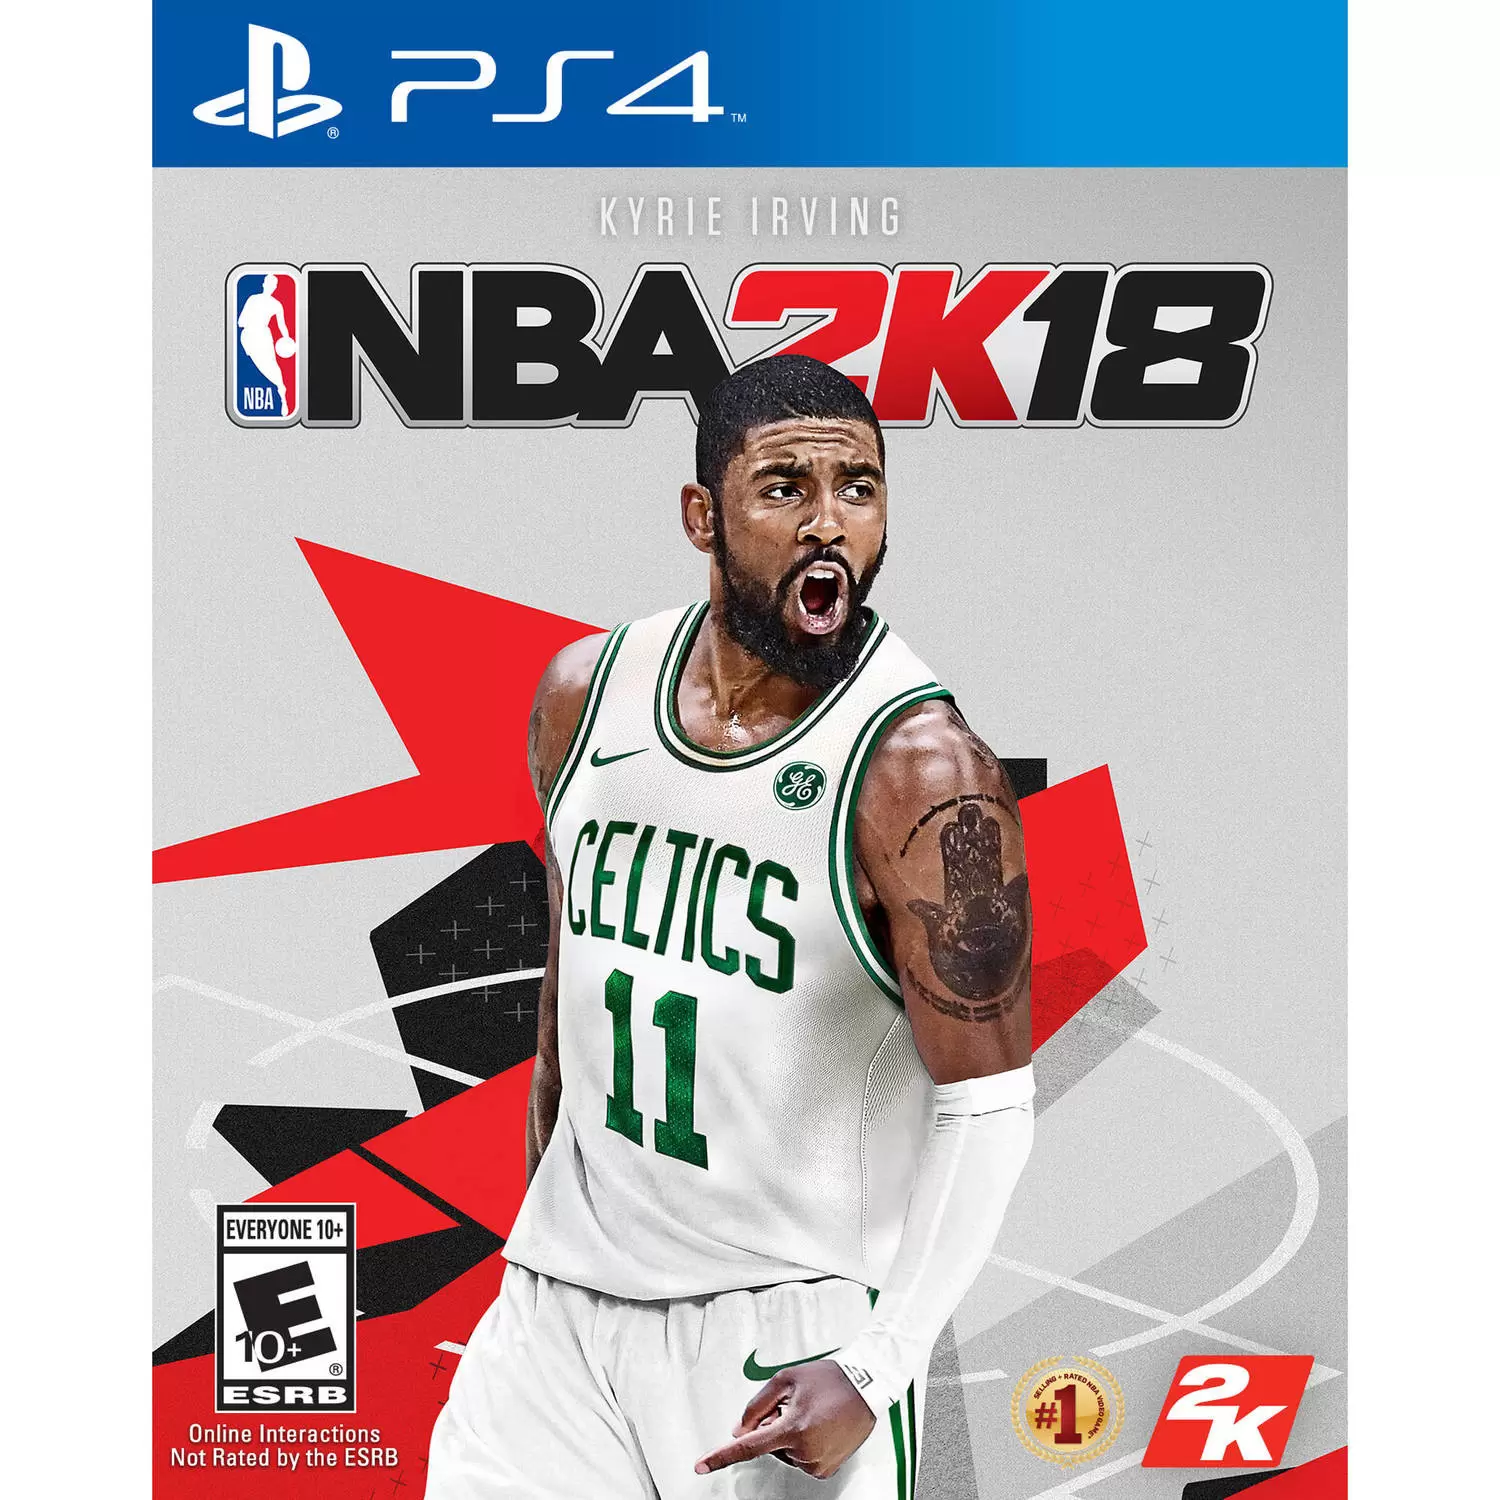 PS4 Games - NBA 2K18